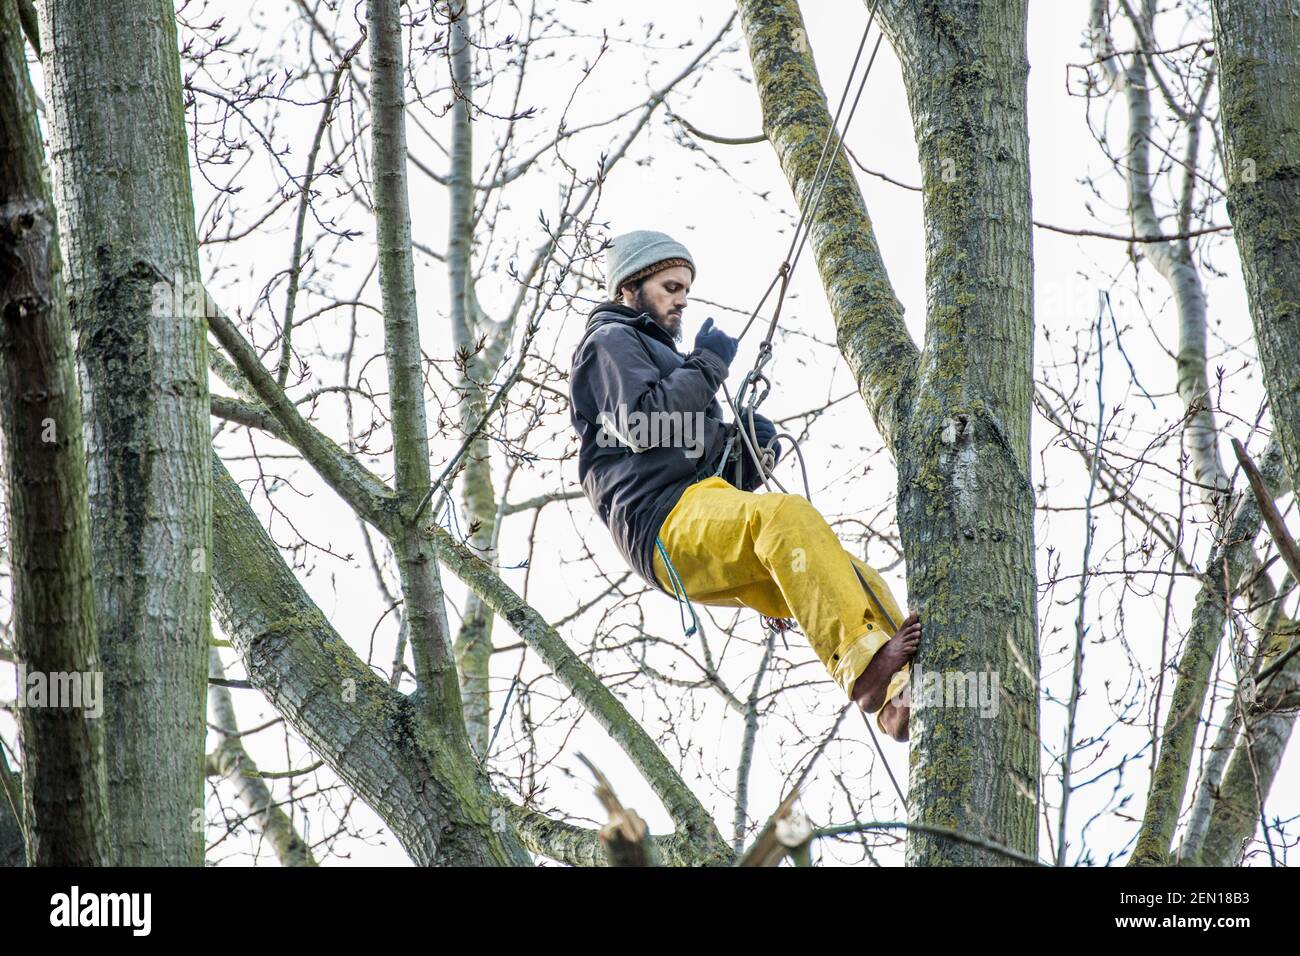 Londra, Regno Unito. 23rd Feb 2021. L'attivista ambientale Marcus Decker, 32 anni, sale per controllare lo stato di un nido di uccelli. E’ il secondo giorno di “tree-sitting” presso gli York Gardens di Londra, Battersea, dove tre attivisti hanno occupato un pioppo nero di 100 anni per evitare che si spelasse, durante la notte tra il 21st e il 22nd febbraio. L'albero era dovuto per il taglio giù per fare il posto per un nuovo cavo elettrico, parte del programma locale di rigenerazione dell'alloggiamento dal consiglio e dalle case di Taylor Wimpey. Di solito la presenza di nidi di uccelli attivi è motivo sufficiente per fermare o ritardare le fellings degli alberi. Foto Stock